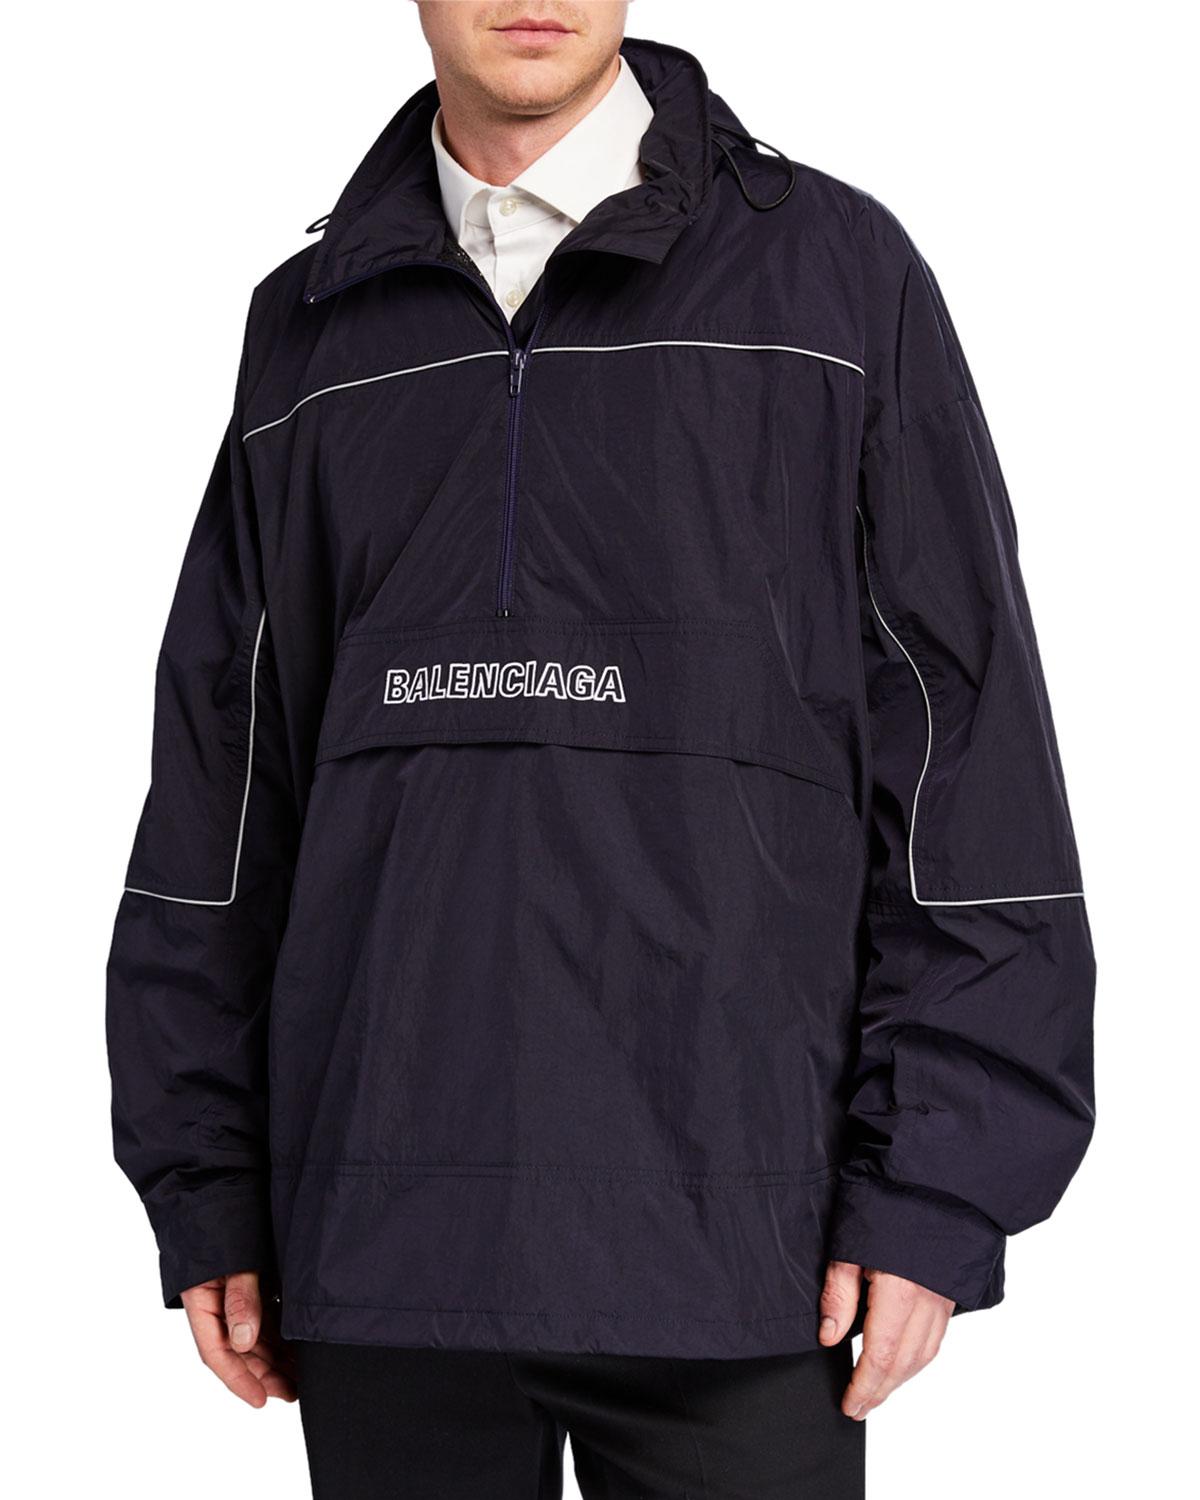 Men's Embroidered Wrinkled Wind-resistant Jacket